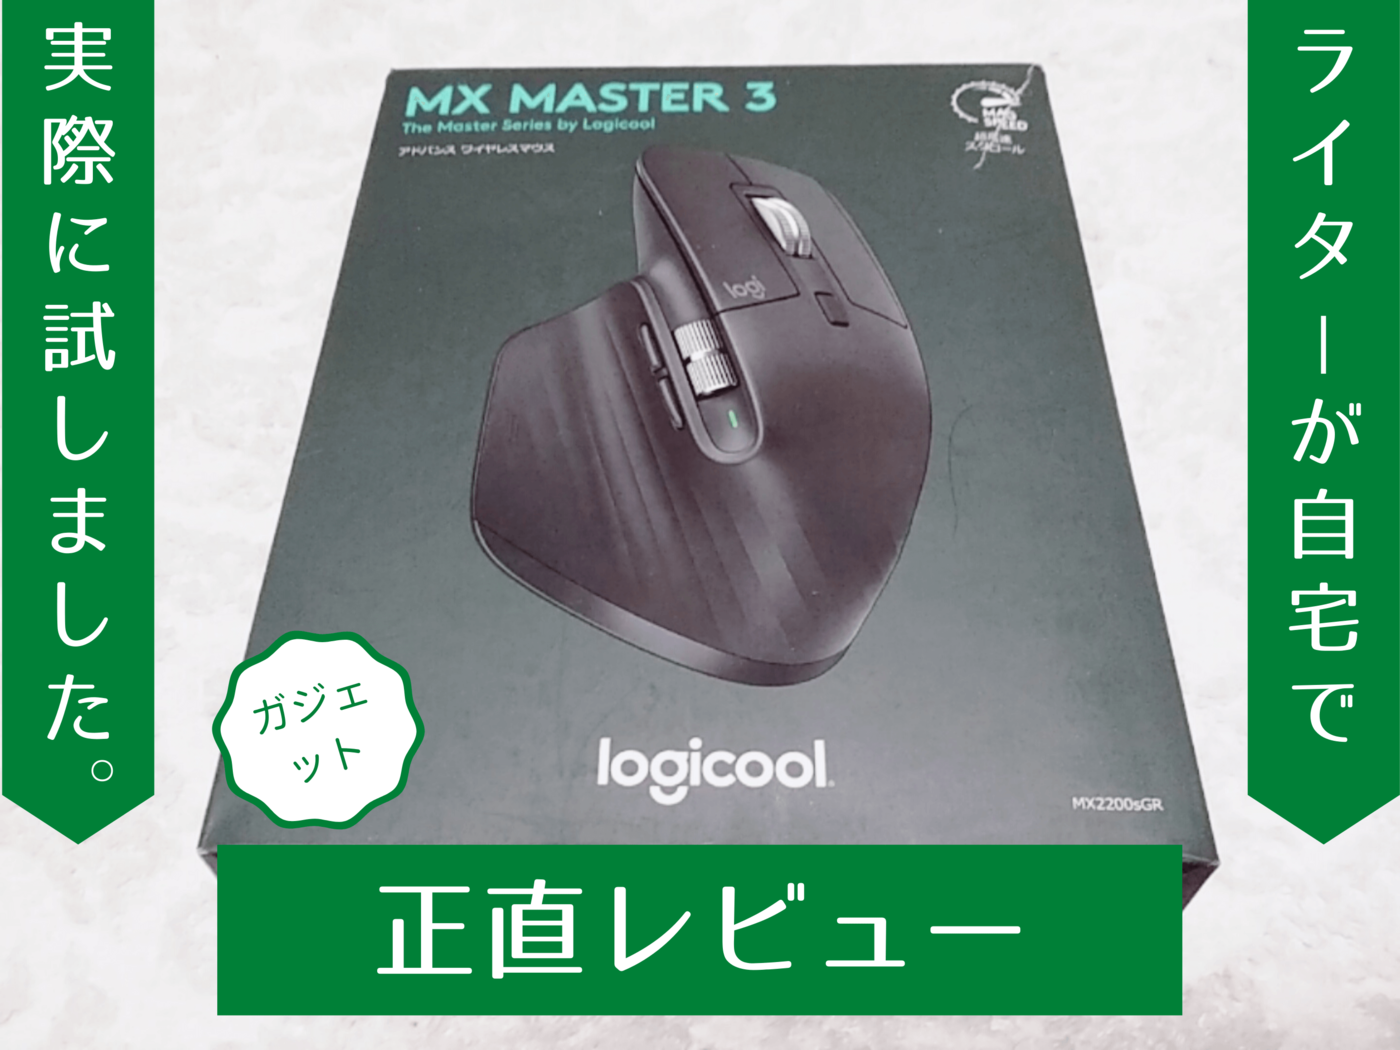 ロジクール アドバンスド ワイヤレスマウス MX Master MX2200sGR